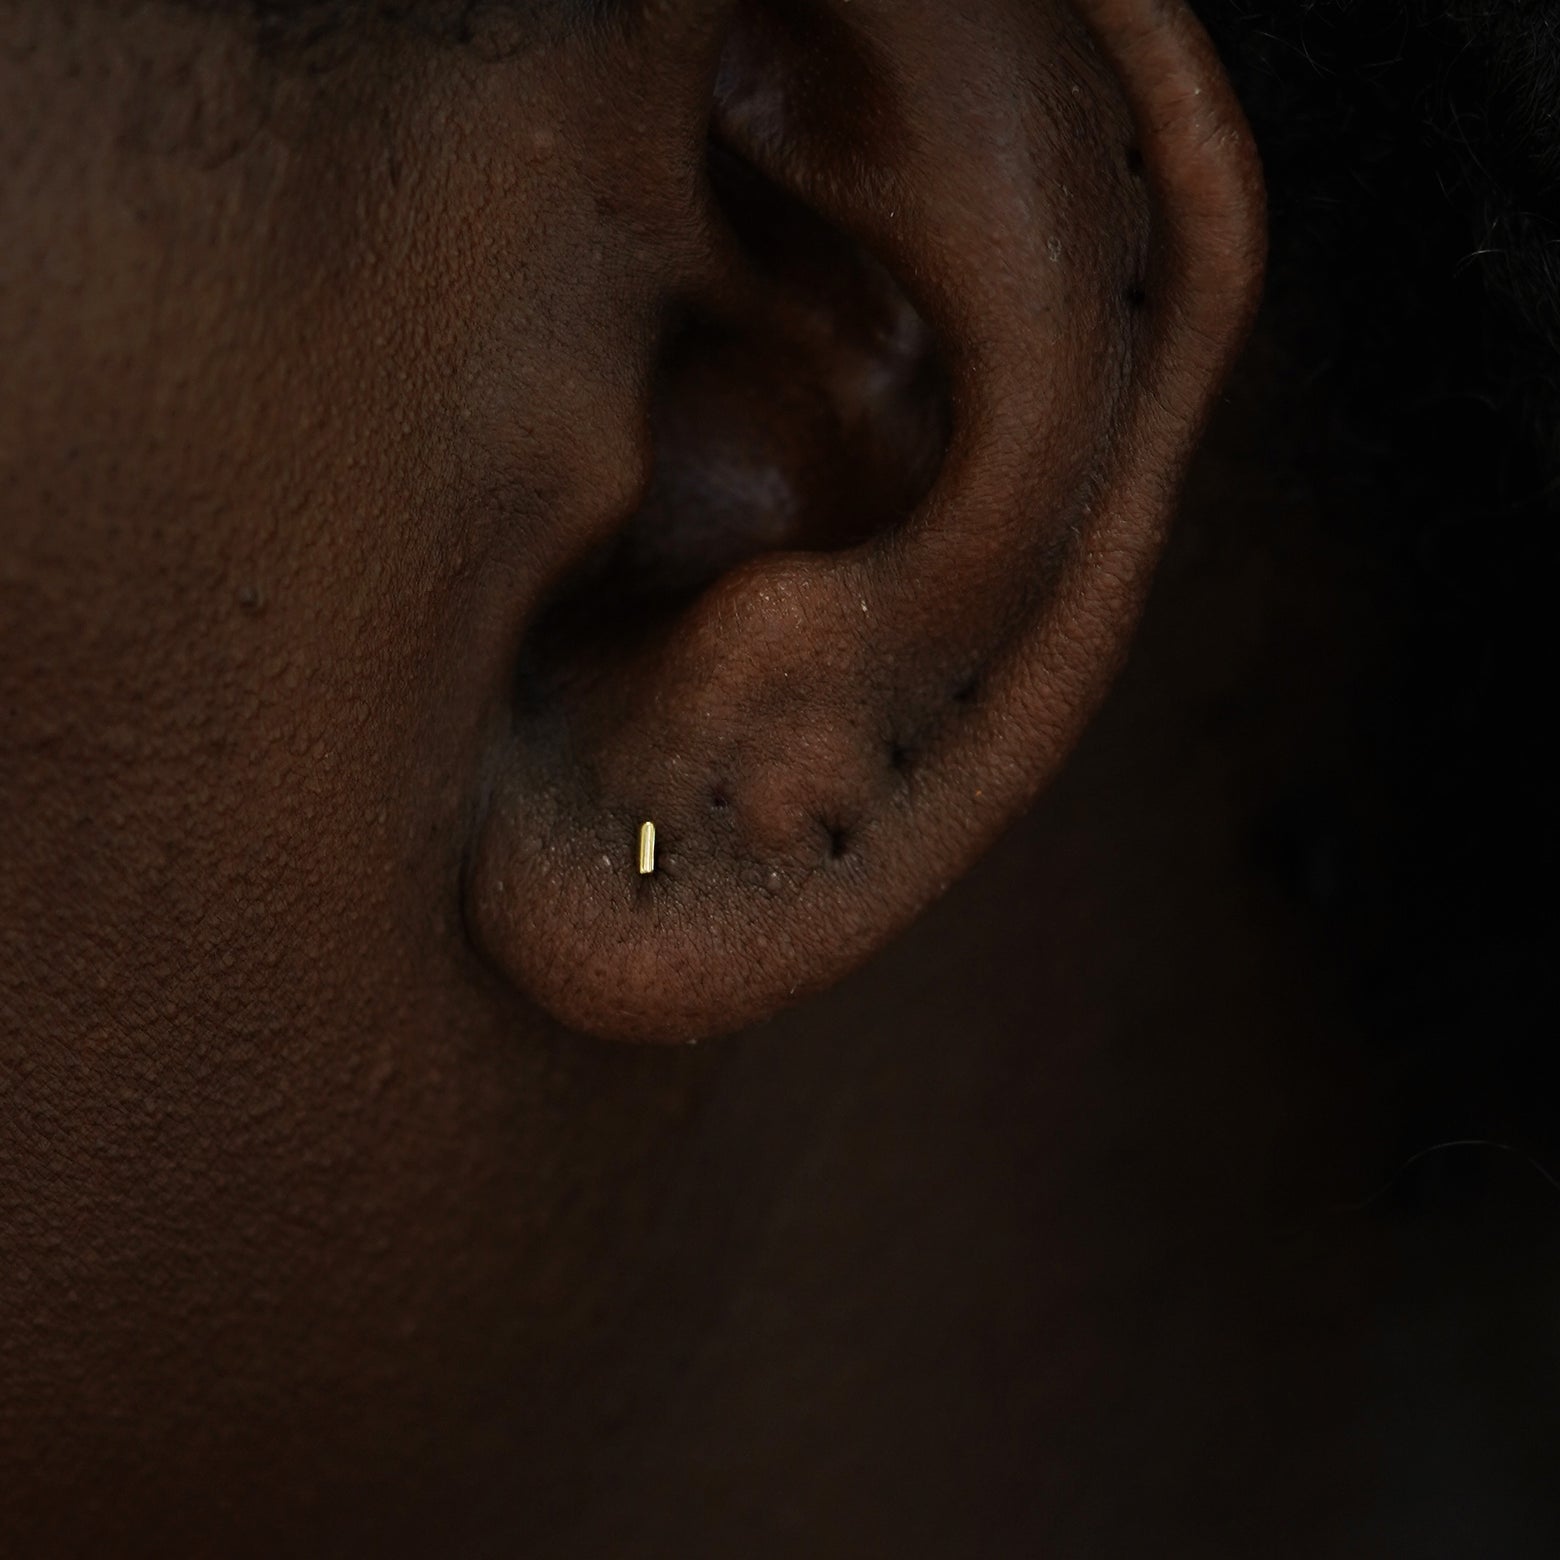 A model's ear wearing a 14k yelllow gold Small Line Earring